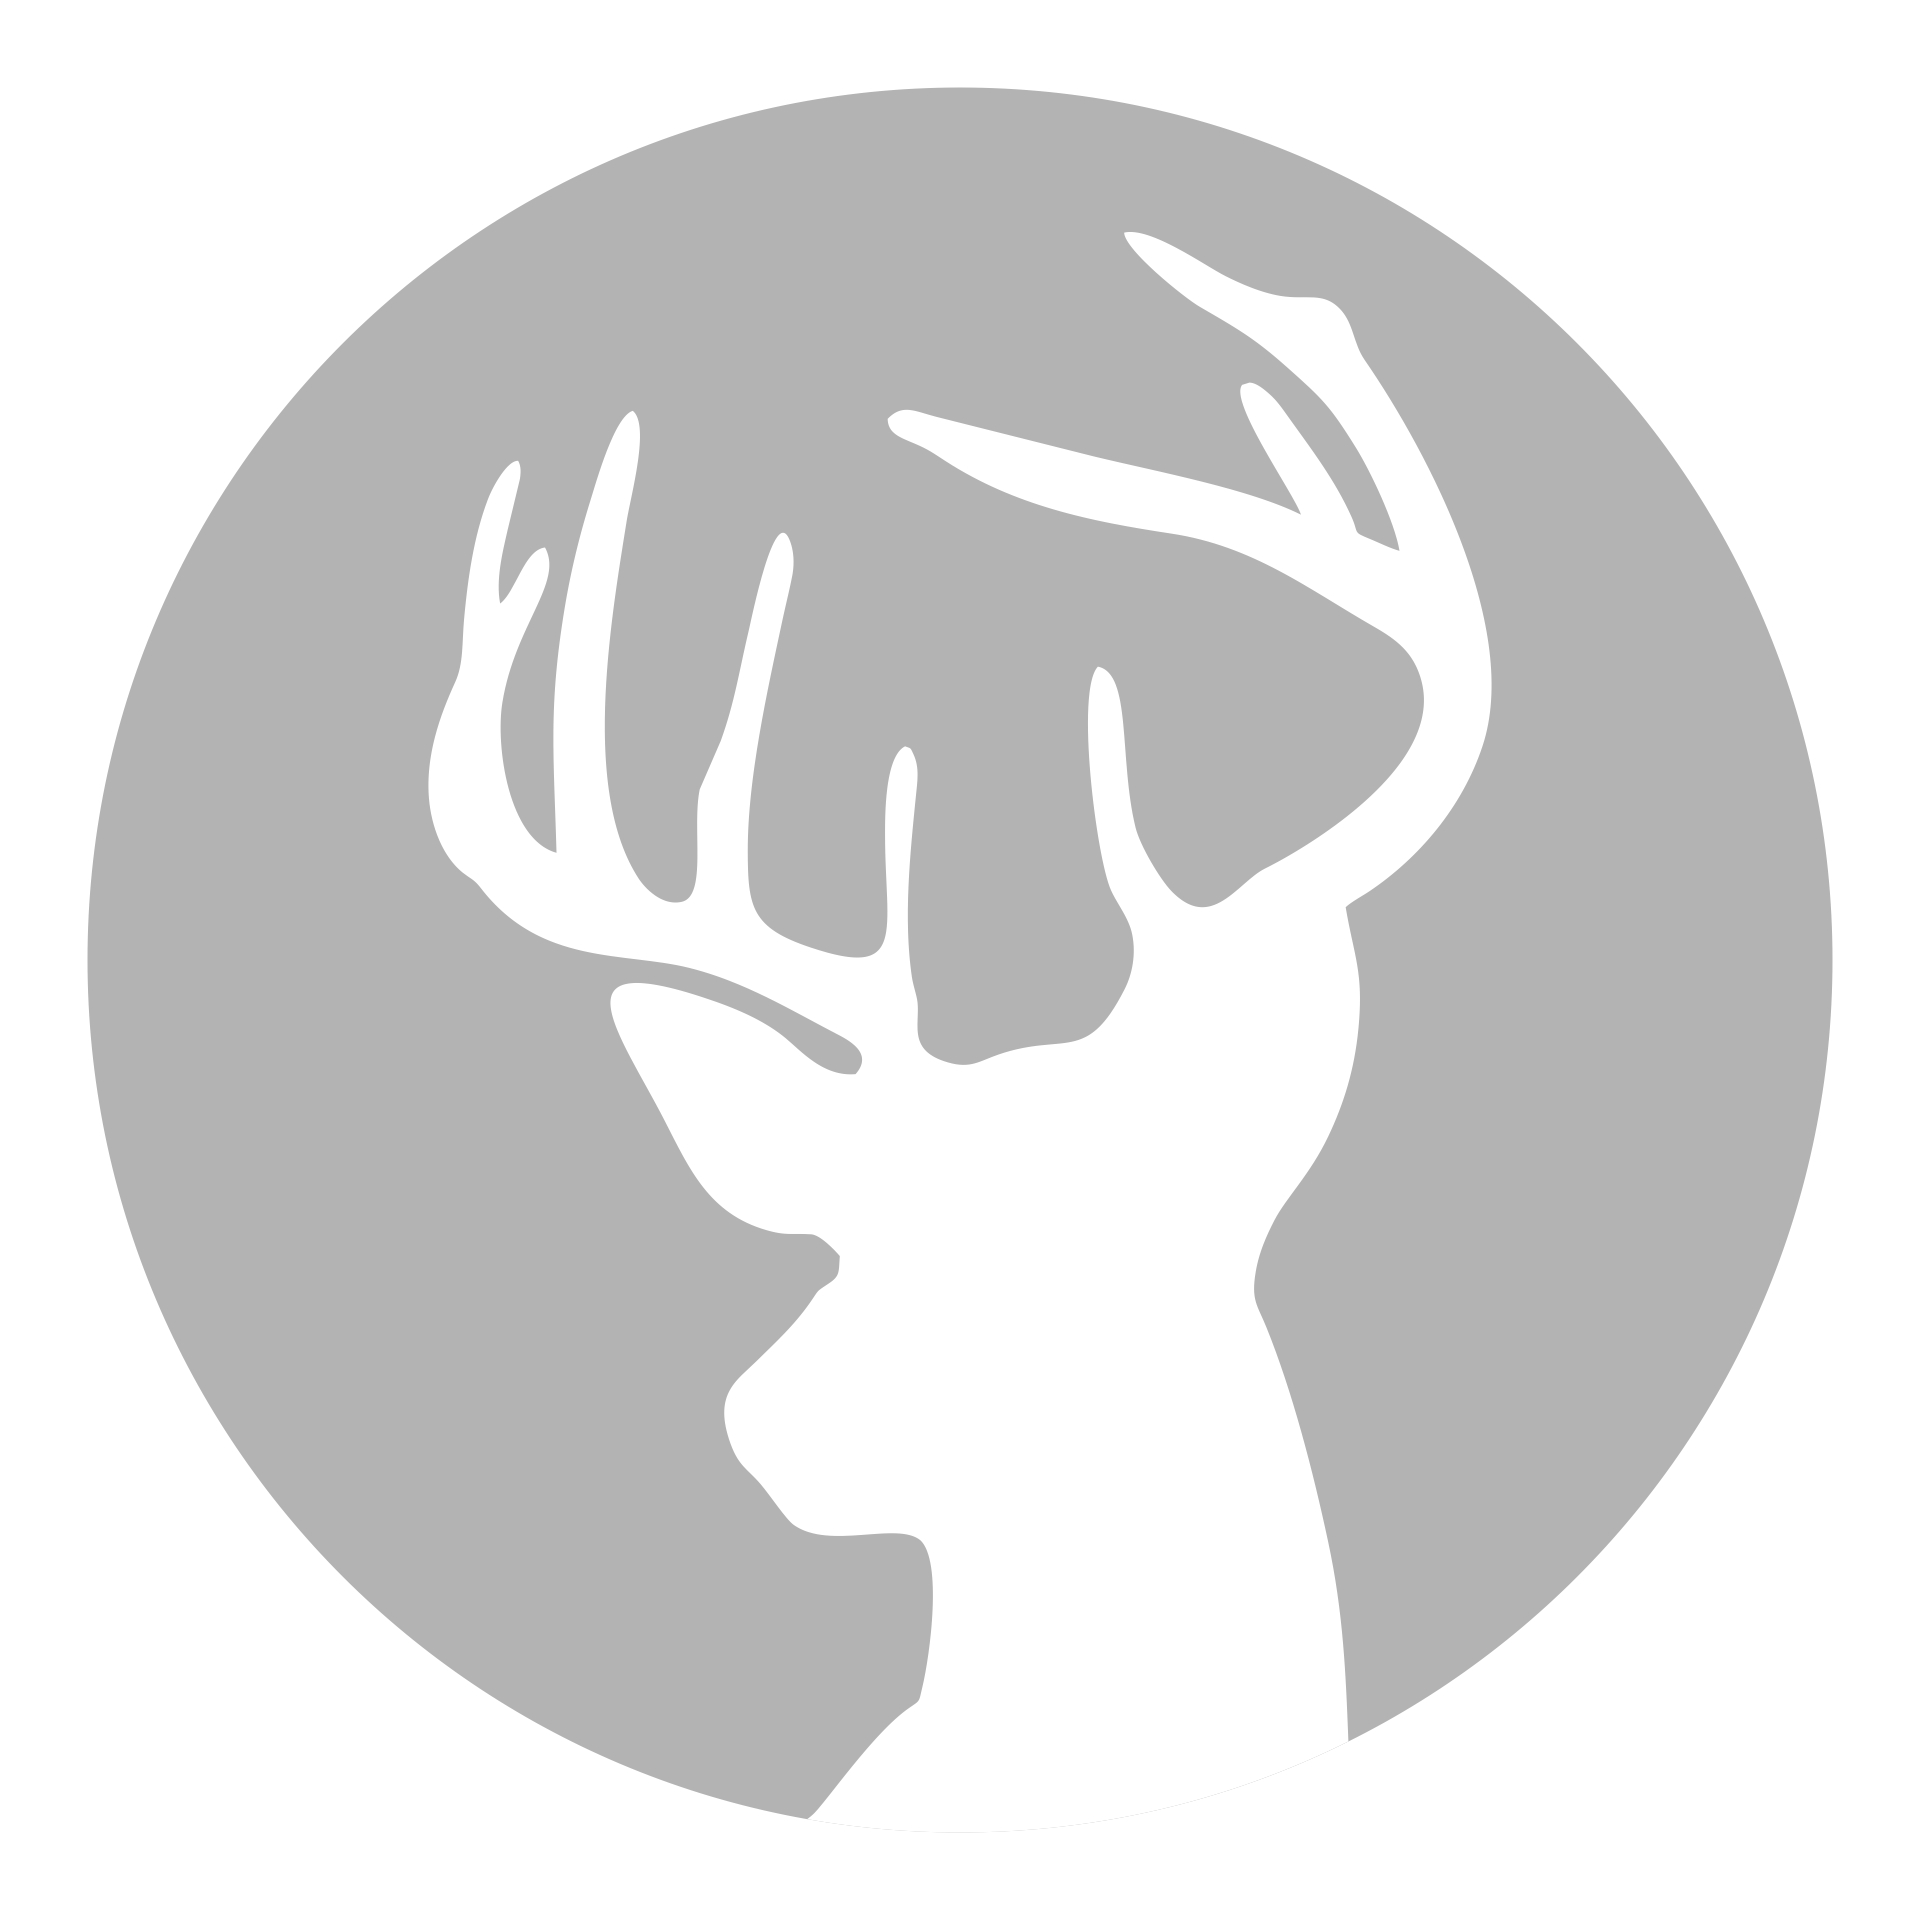 4 Best Images of Printable Deer Stencils Deer Head Template